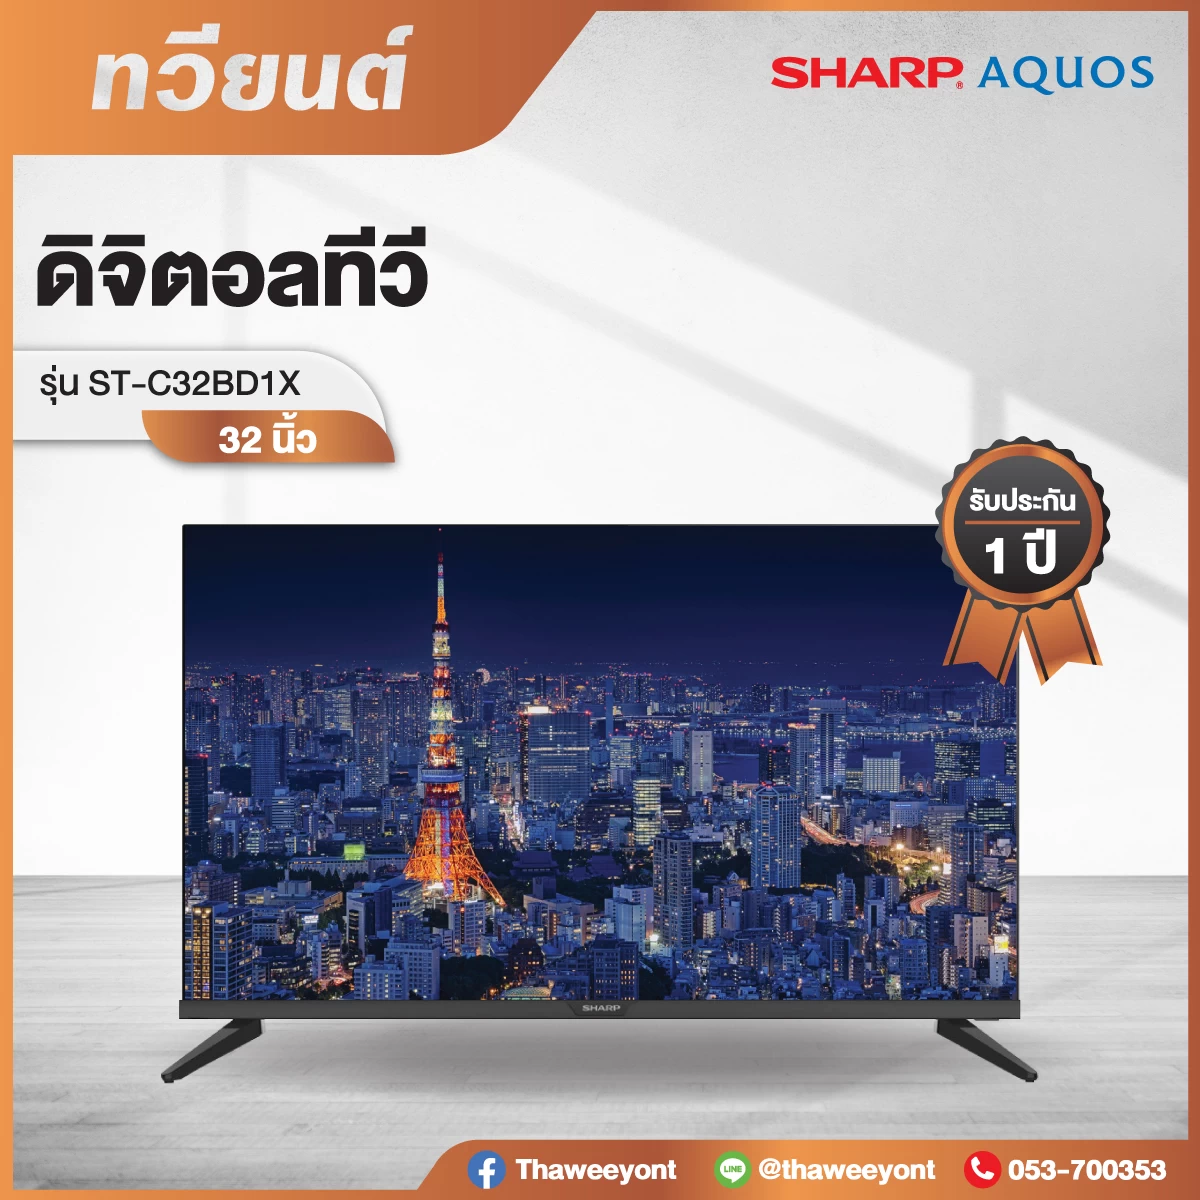 Digital TV HD Sharp รุ่น 2T-C32BD1X ขนาด 32 นิ้ว